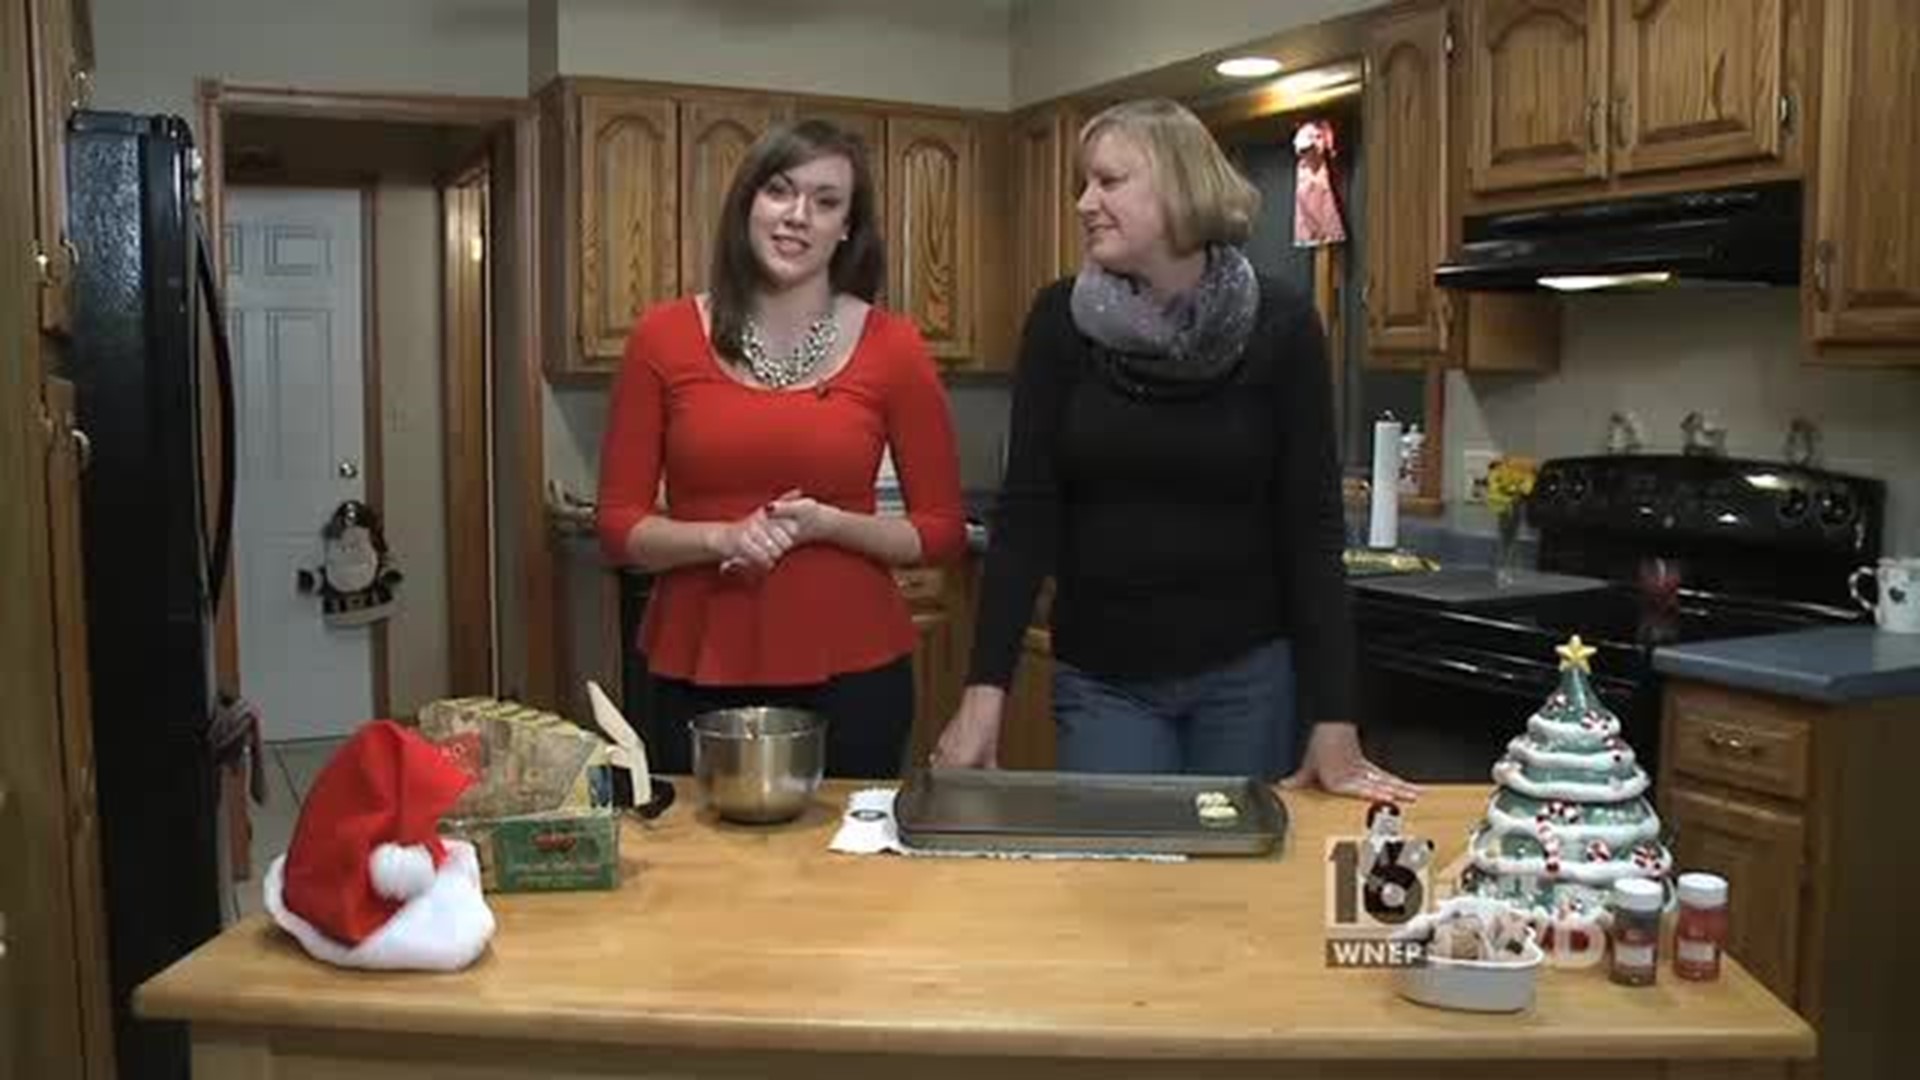 Stacy Lange & Lara Greenberg make Cookies